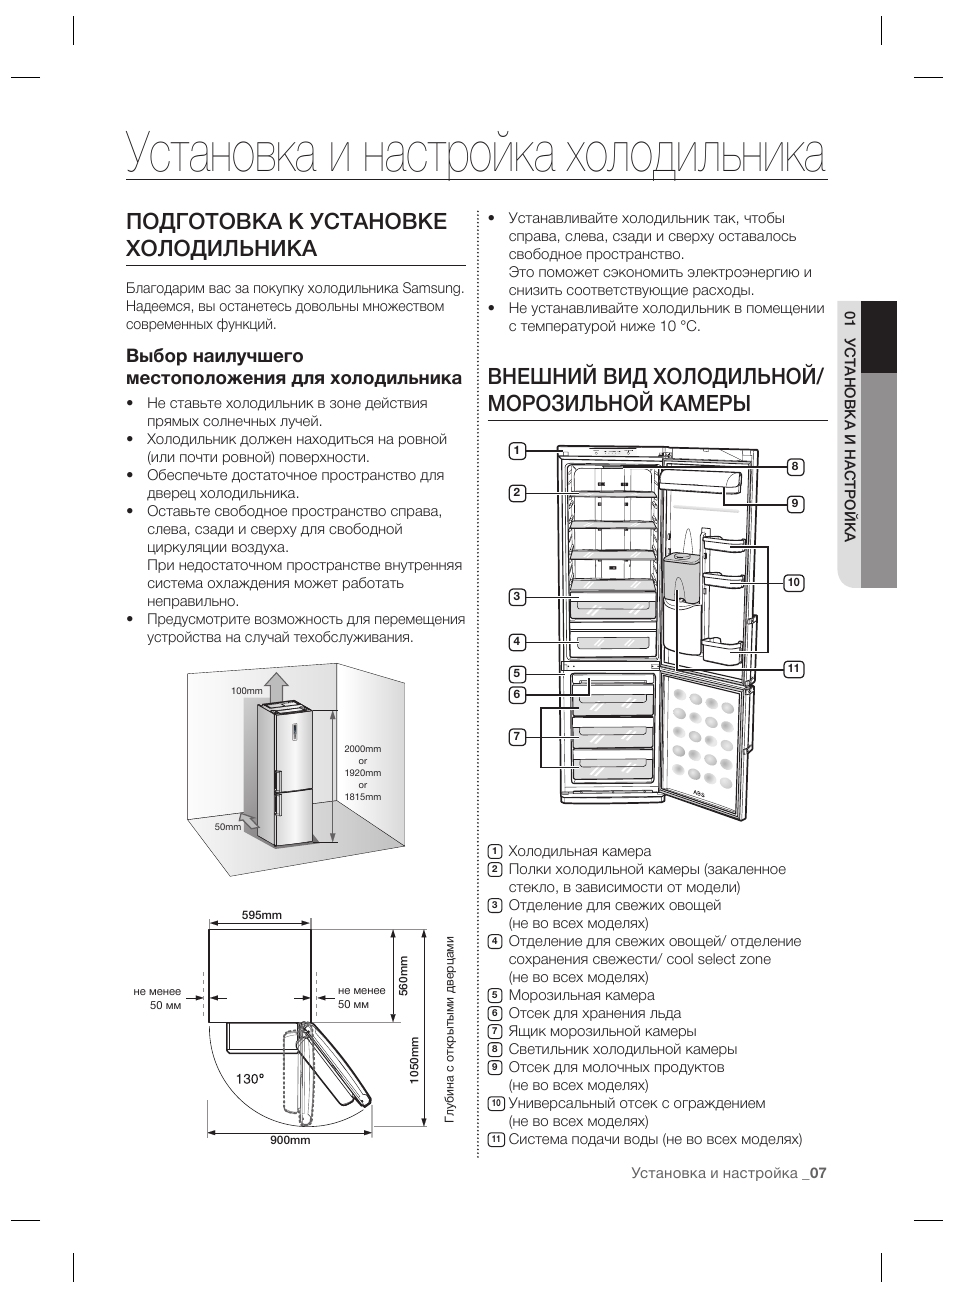 Инструкция по первому включению холодильника в сеть. как произвести первое включение холодильника